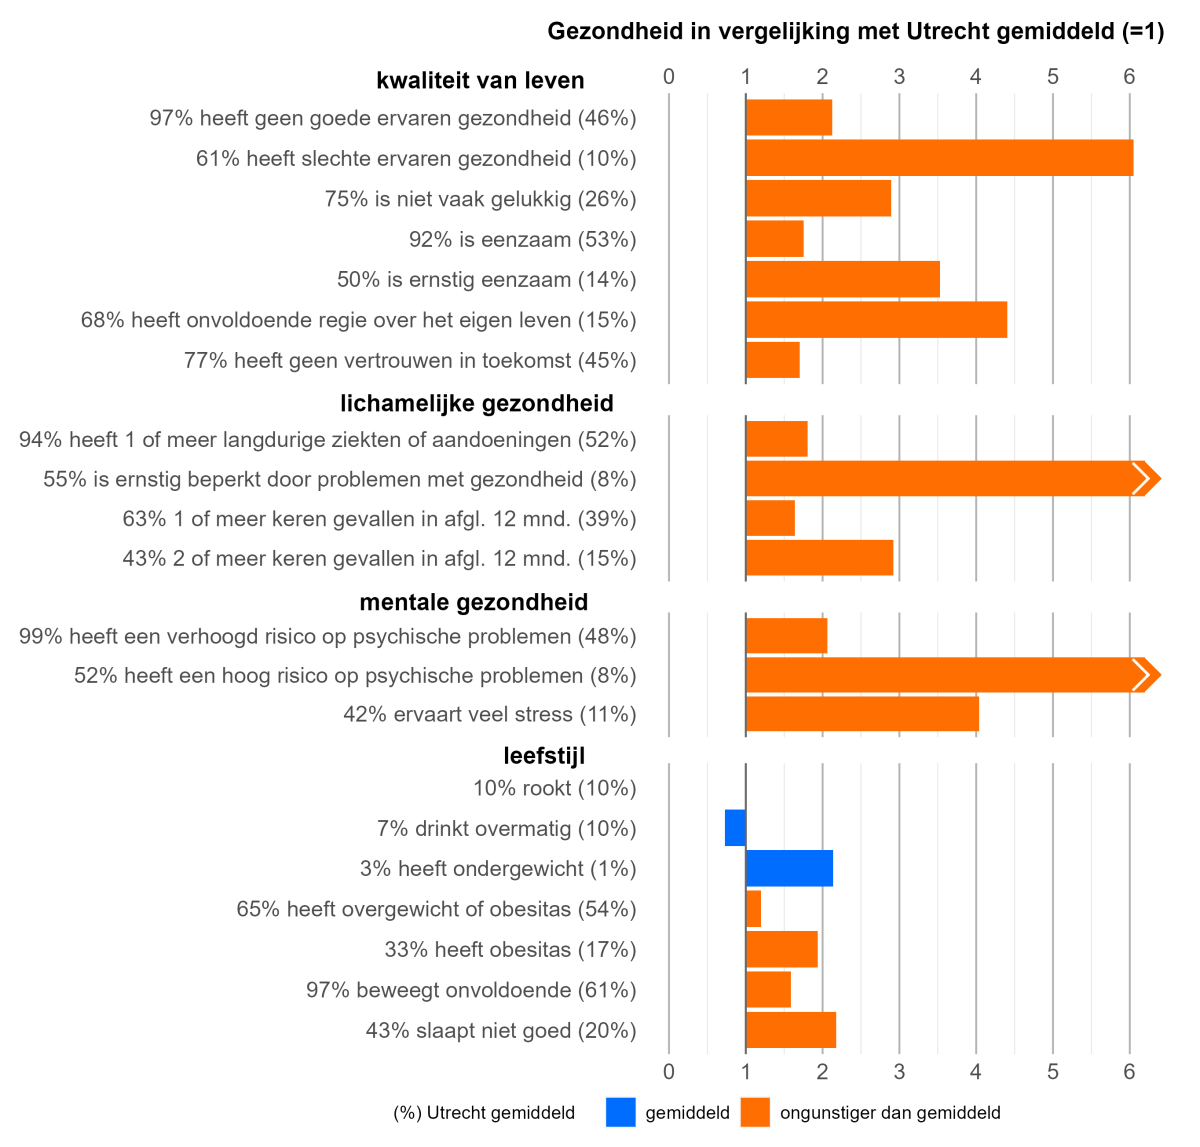 Ouderen die zich zeer ongezond voelen scoren op bijna alle aspecten van gezondheid ongunstiger dan gemiddeld in Utrecht.